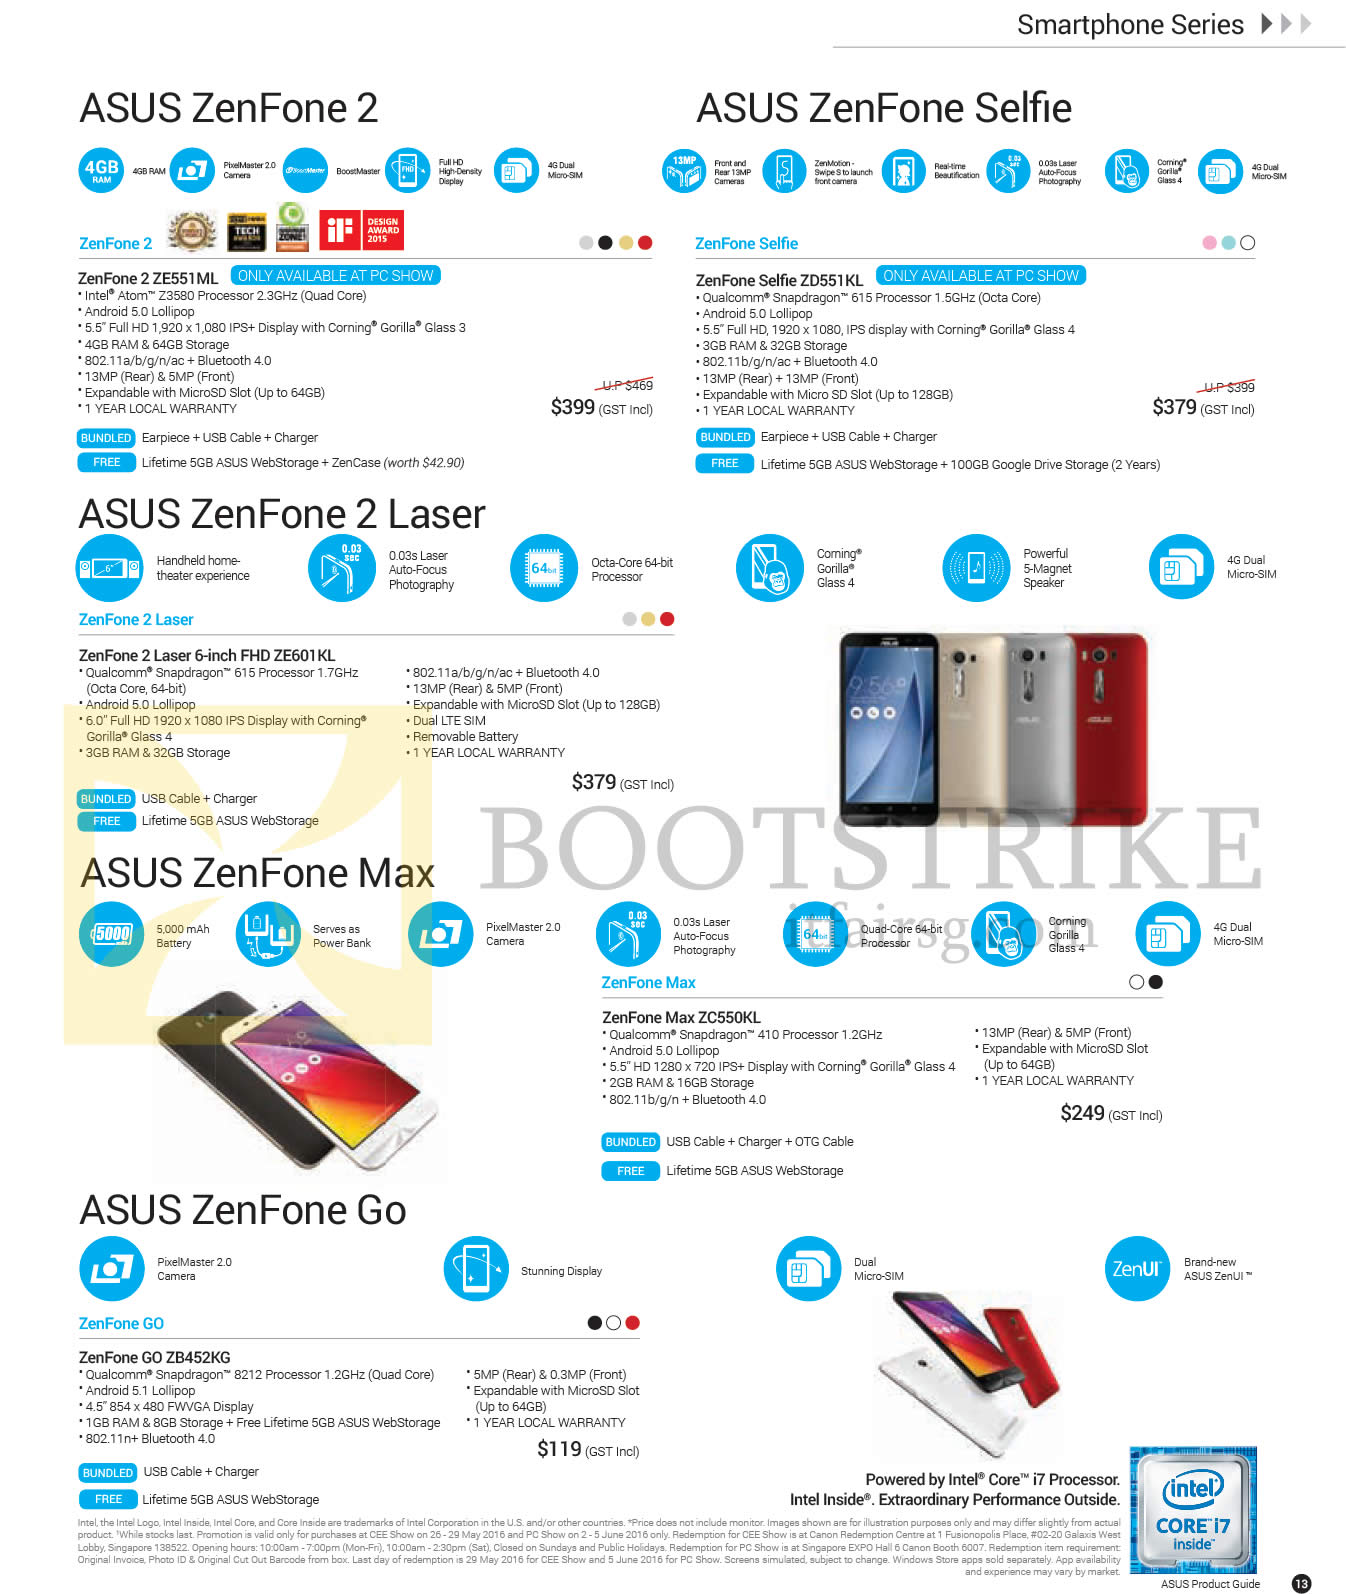 PC SHOW 2016 price list image brochure of ASUS Smartphones ZenFone Series, ZenFone 2 ZE551ML, ZenFone Selfie ZD551KL, ZenFone 2 Laser 6-inch FHD ZE601KL, ZenFone Max ZC550KL, ZenFone GO ZB452KG